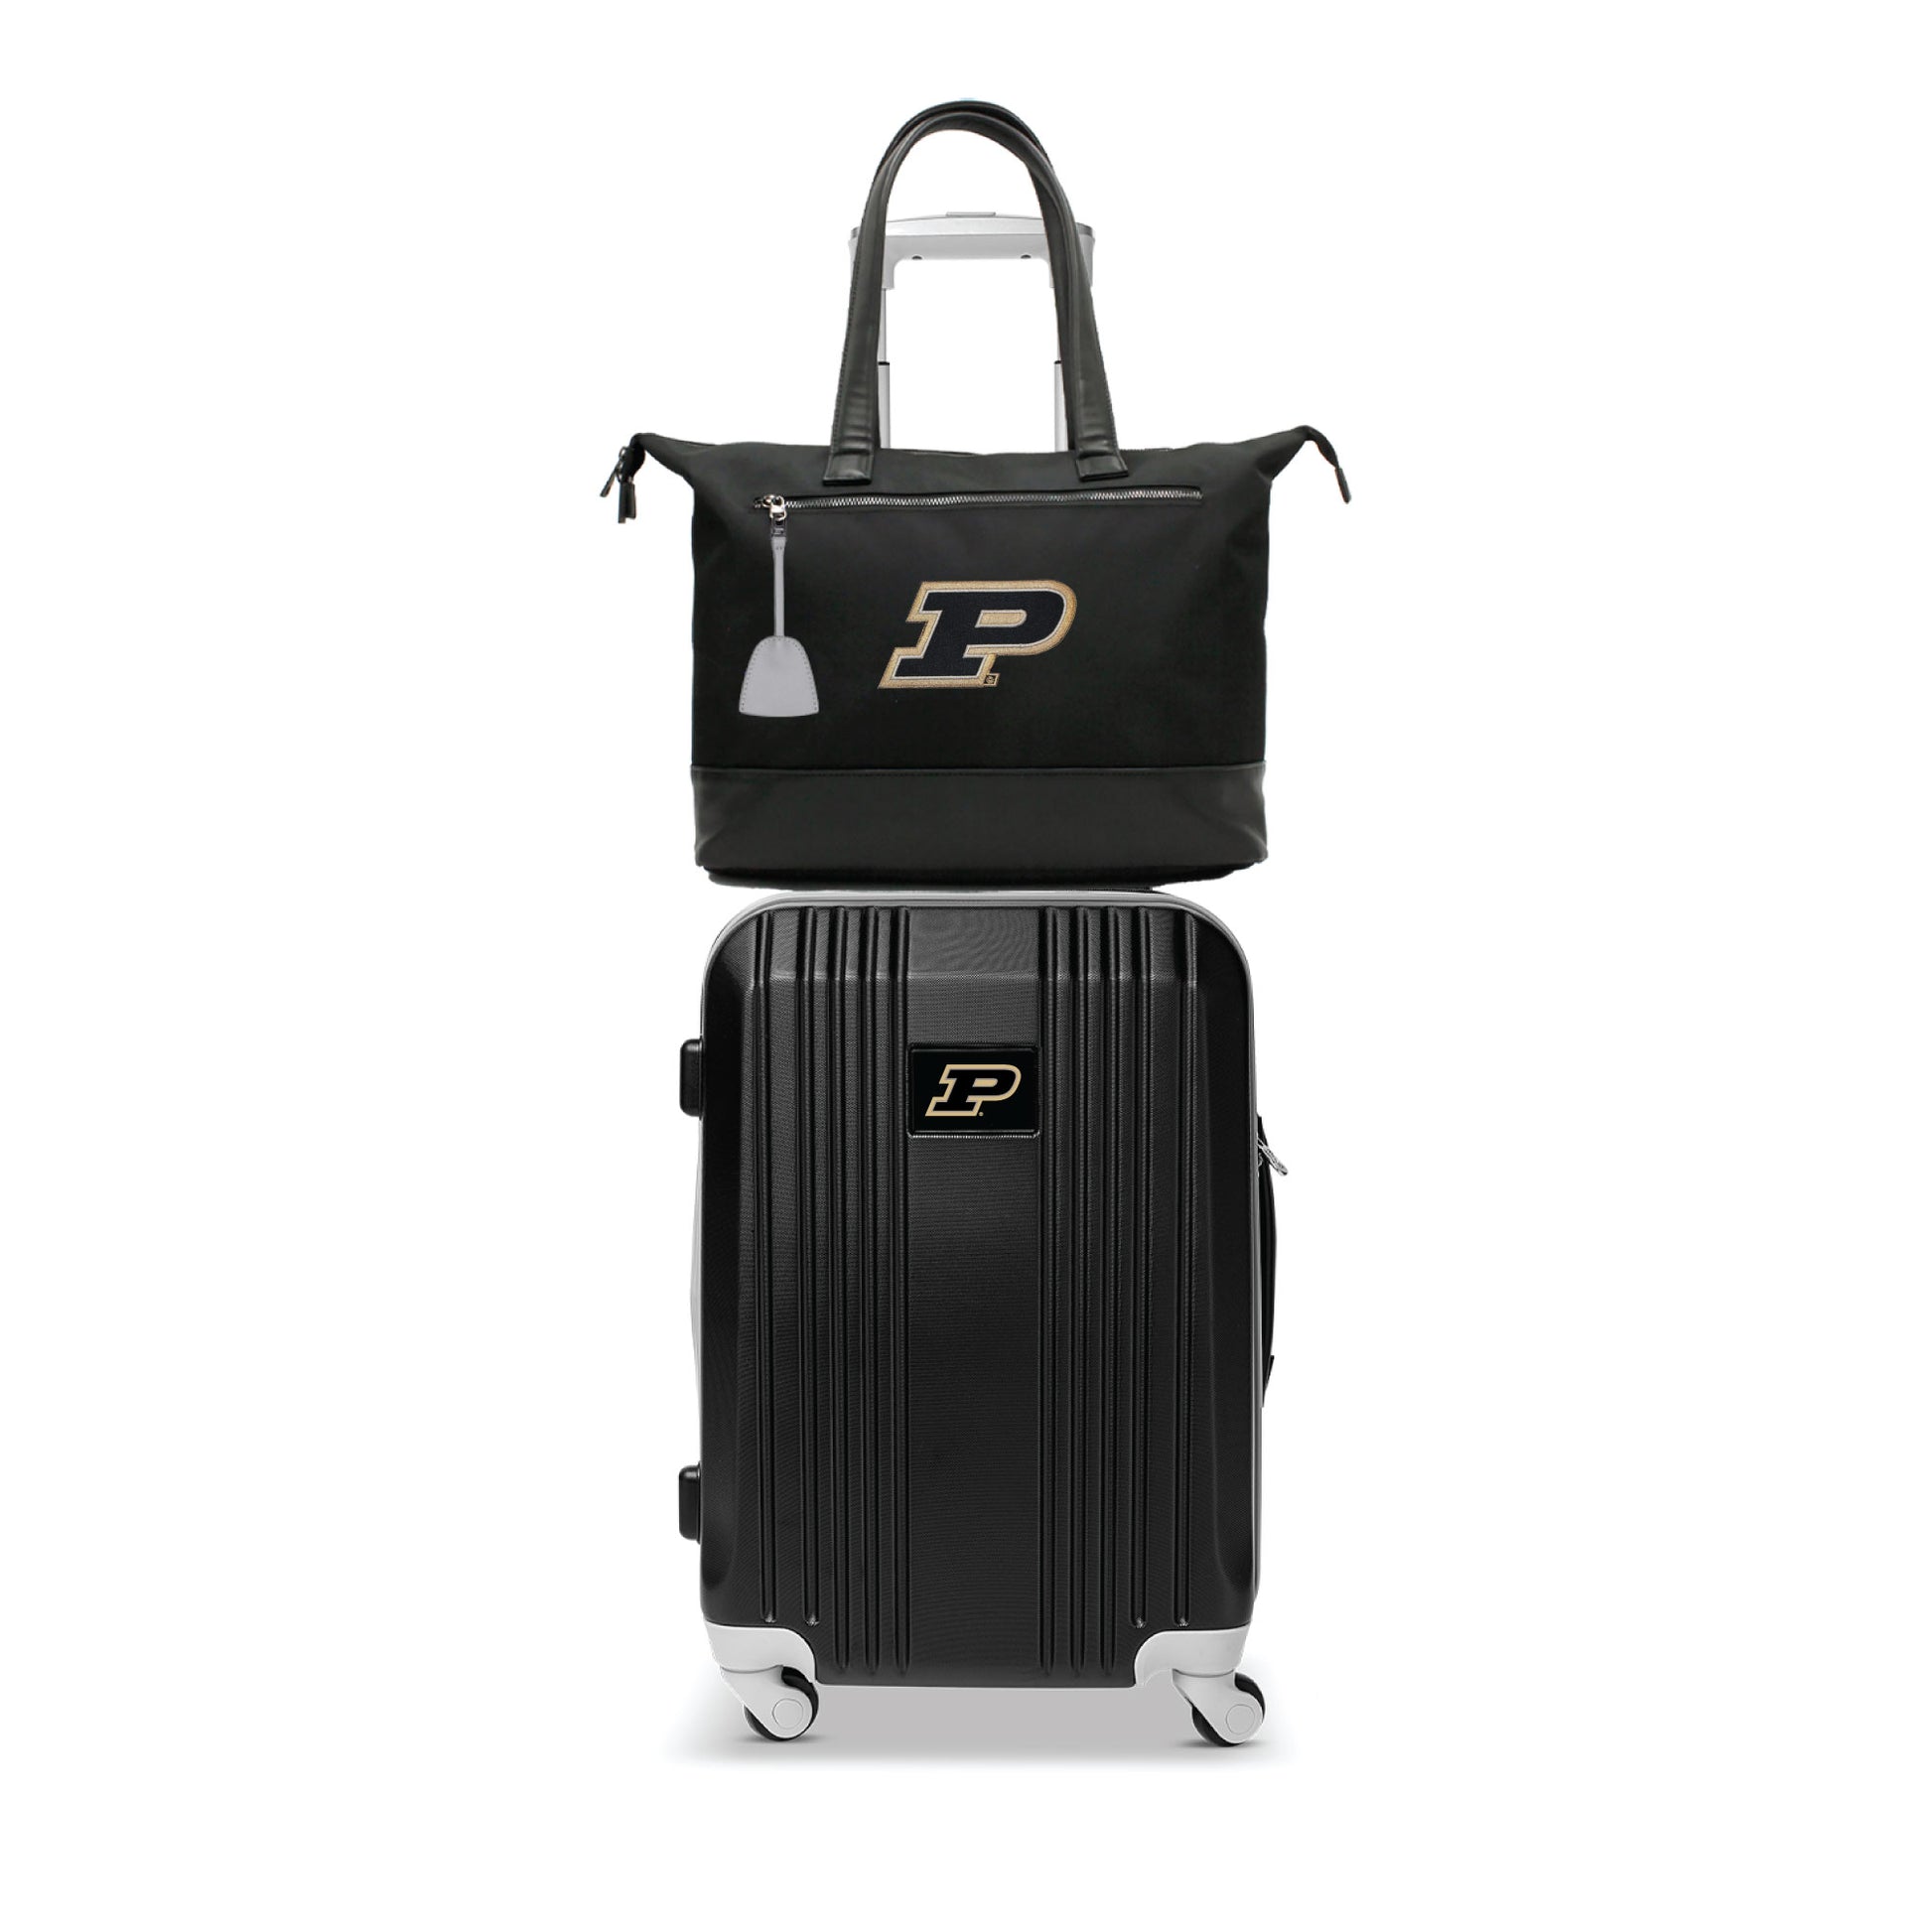 Purdue Boilermakers Premium Laptop Tote Bag and Luggage Set